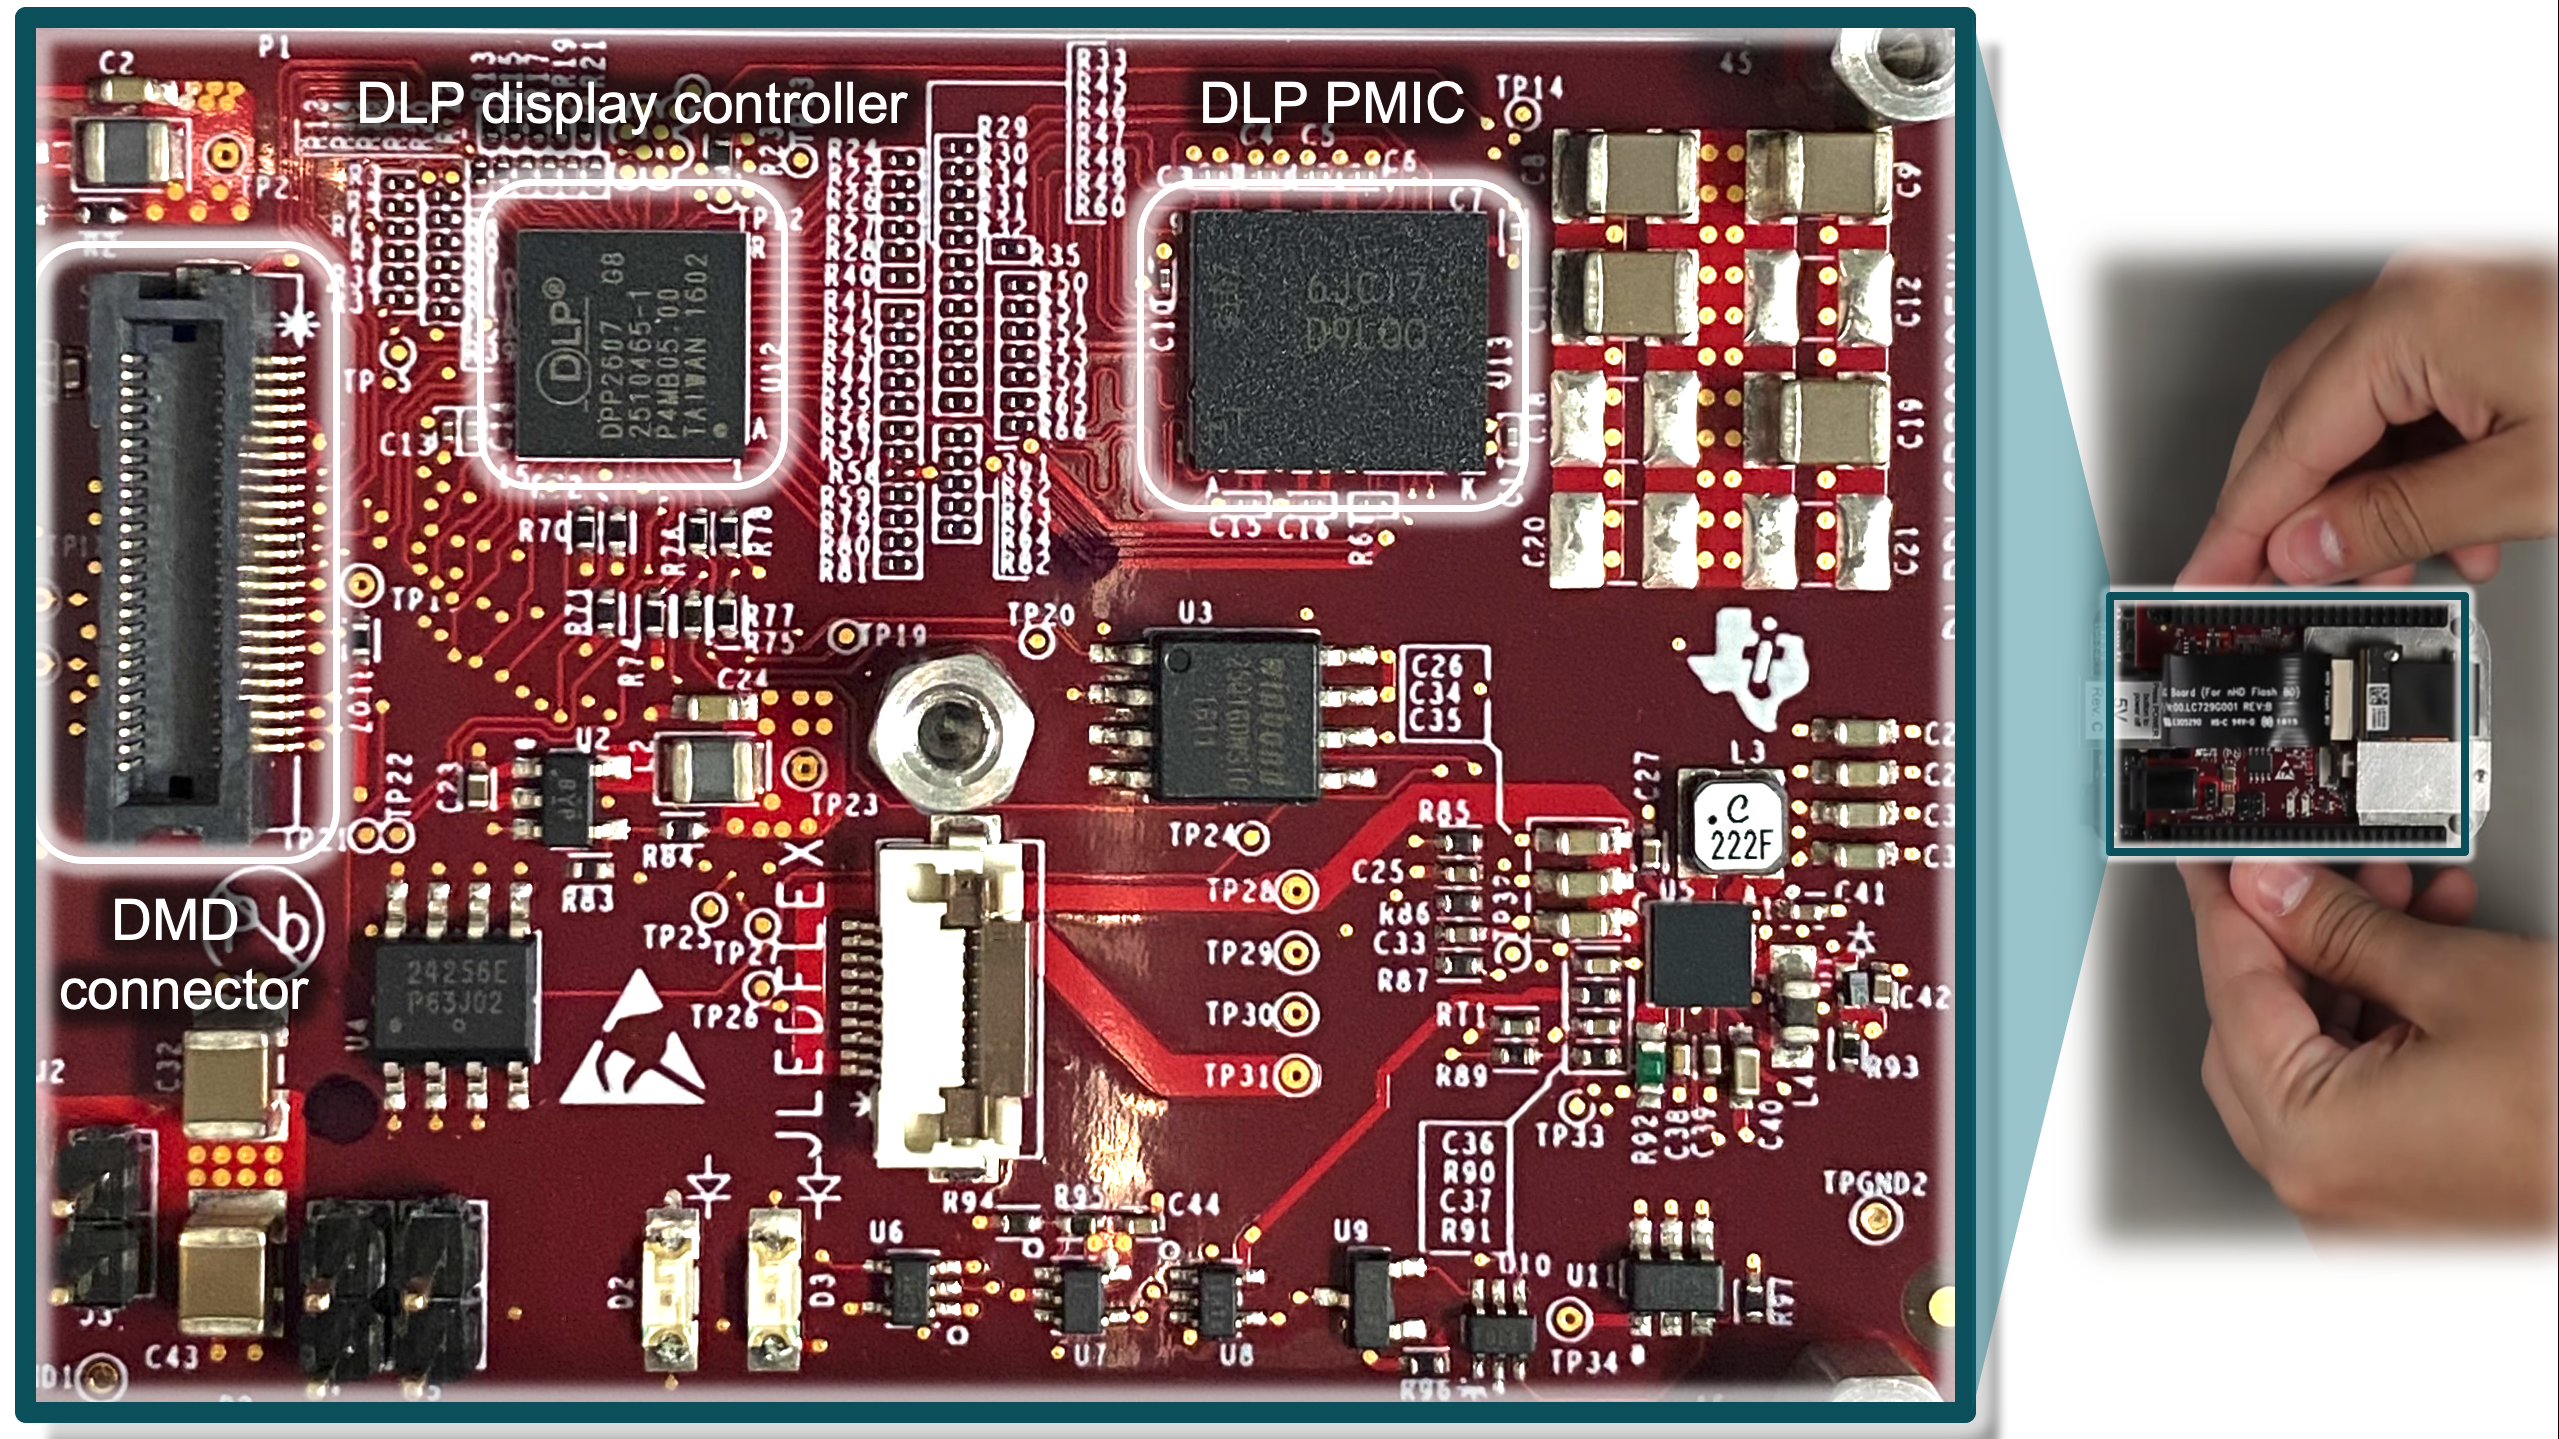  DLP 0.2 nHD (DLP2000) 晶片組評估模組 (EVM) 電子元件